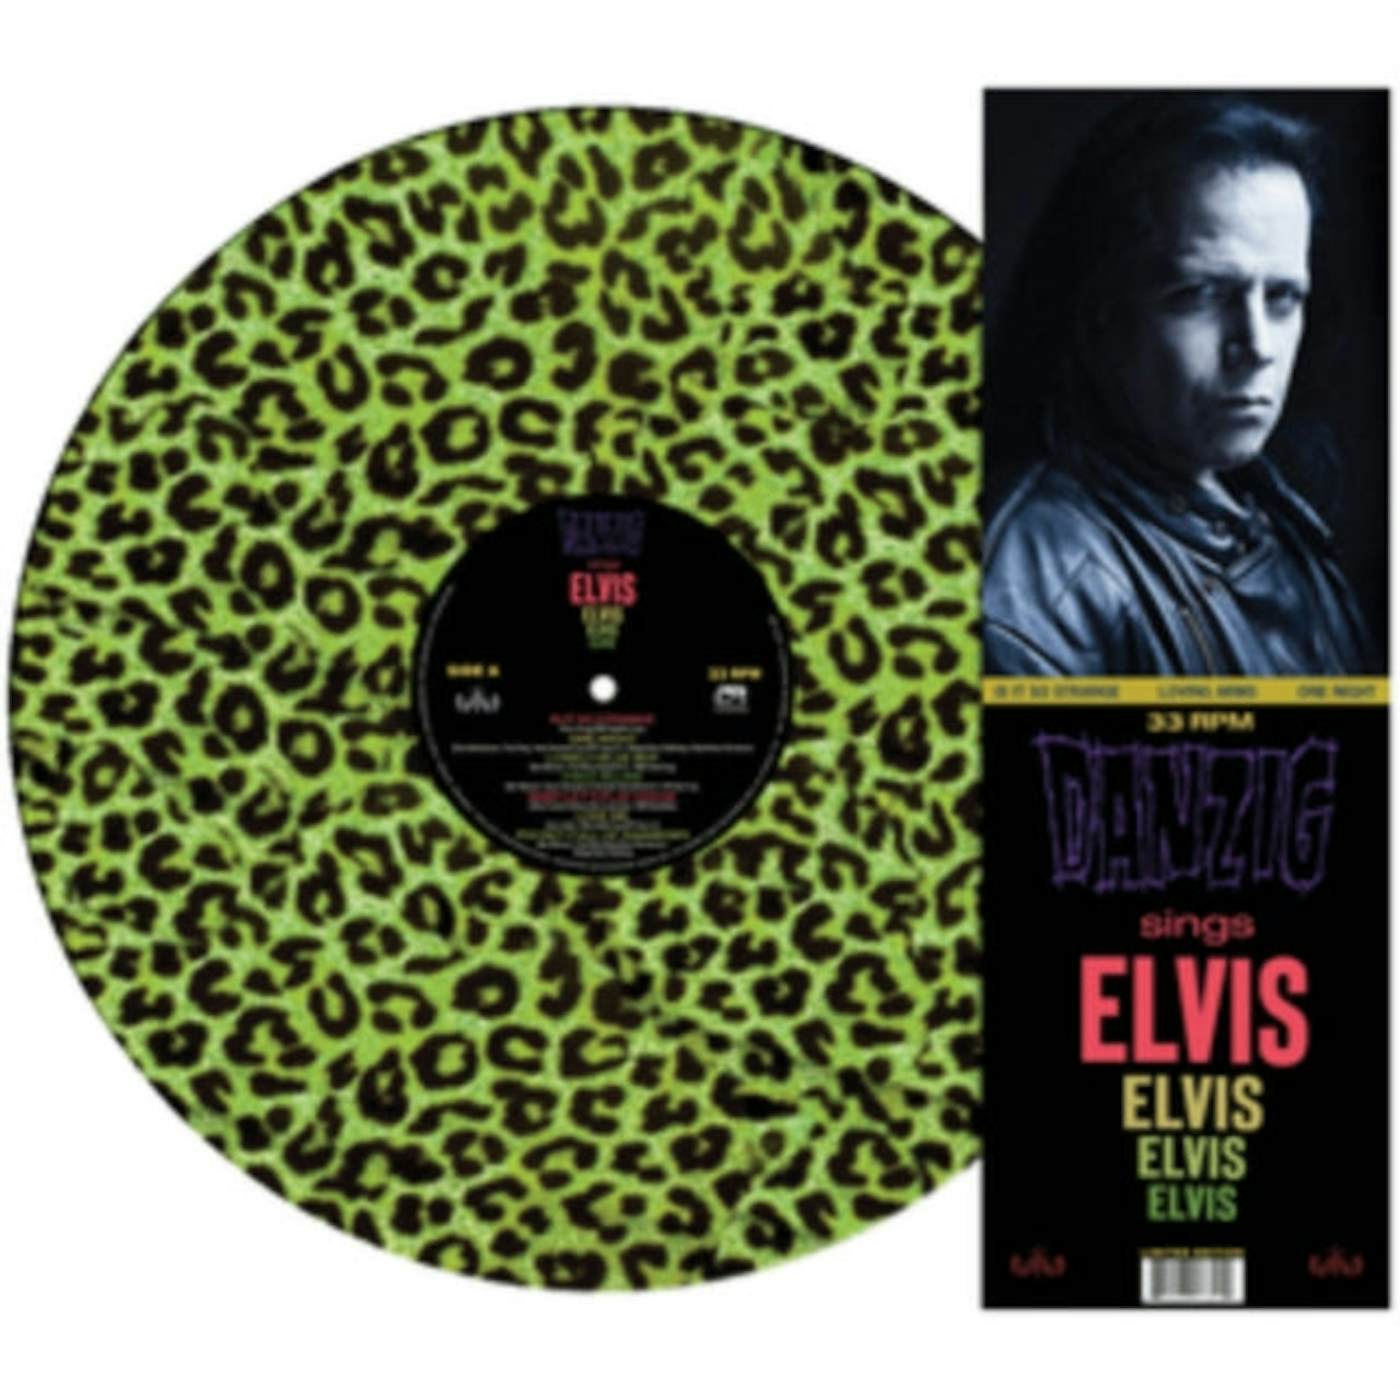 Danzig LP - Sings Elvis (Green Leopard Print) (Vinyl)